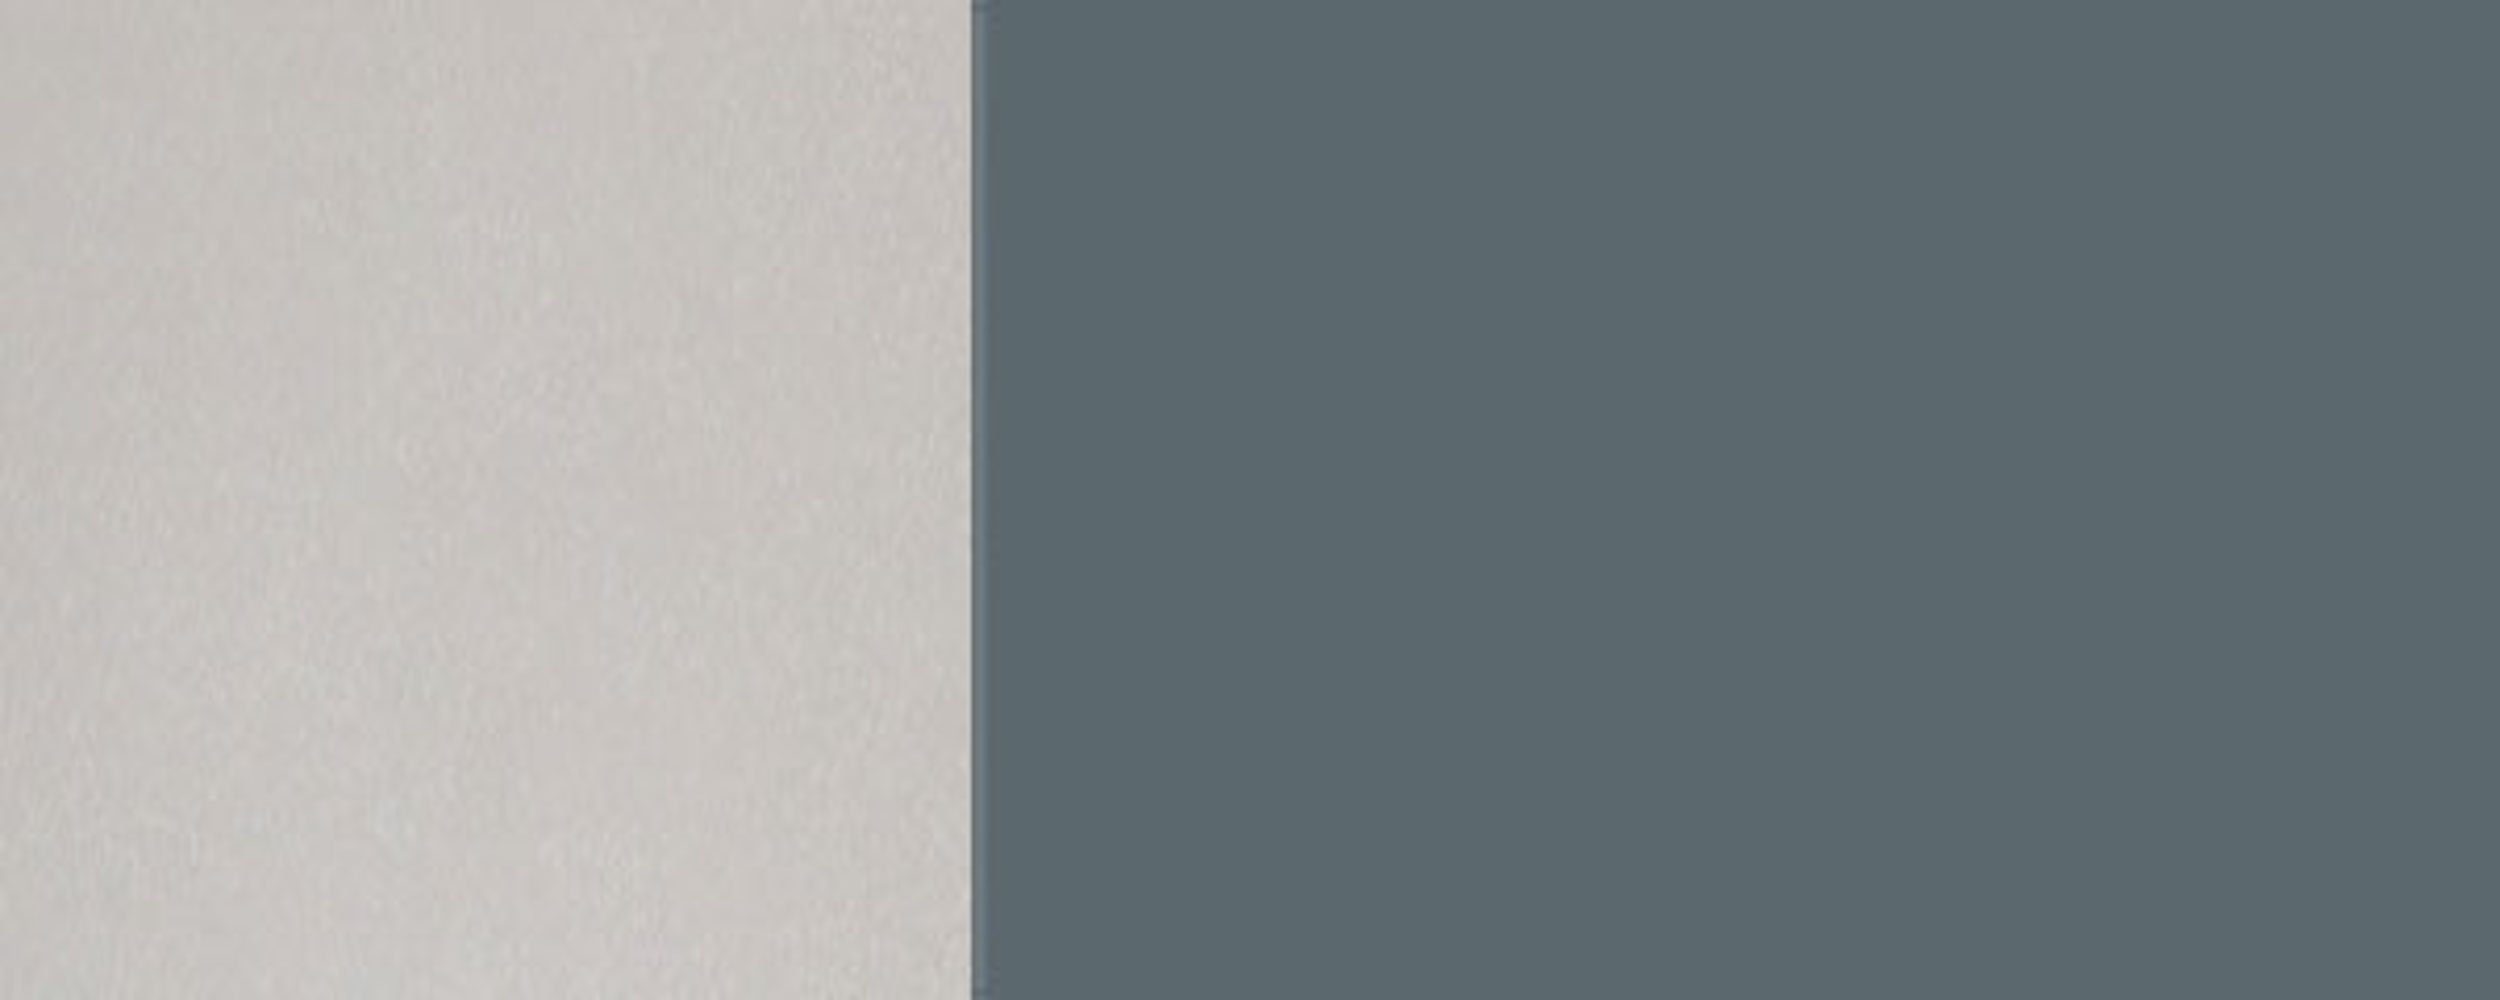 wählbar Front- Hochglanz grifflos Klapphängeschrank 60cm (Florence) und Florence 1-türig 7031 Korpusfarbe Feldmann-Wohnen Klapptür RAL blaugrau